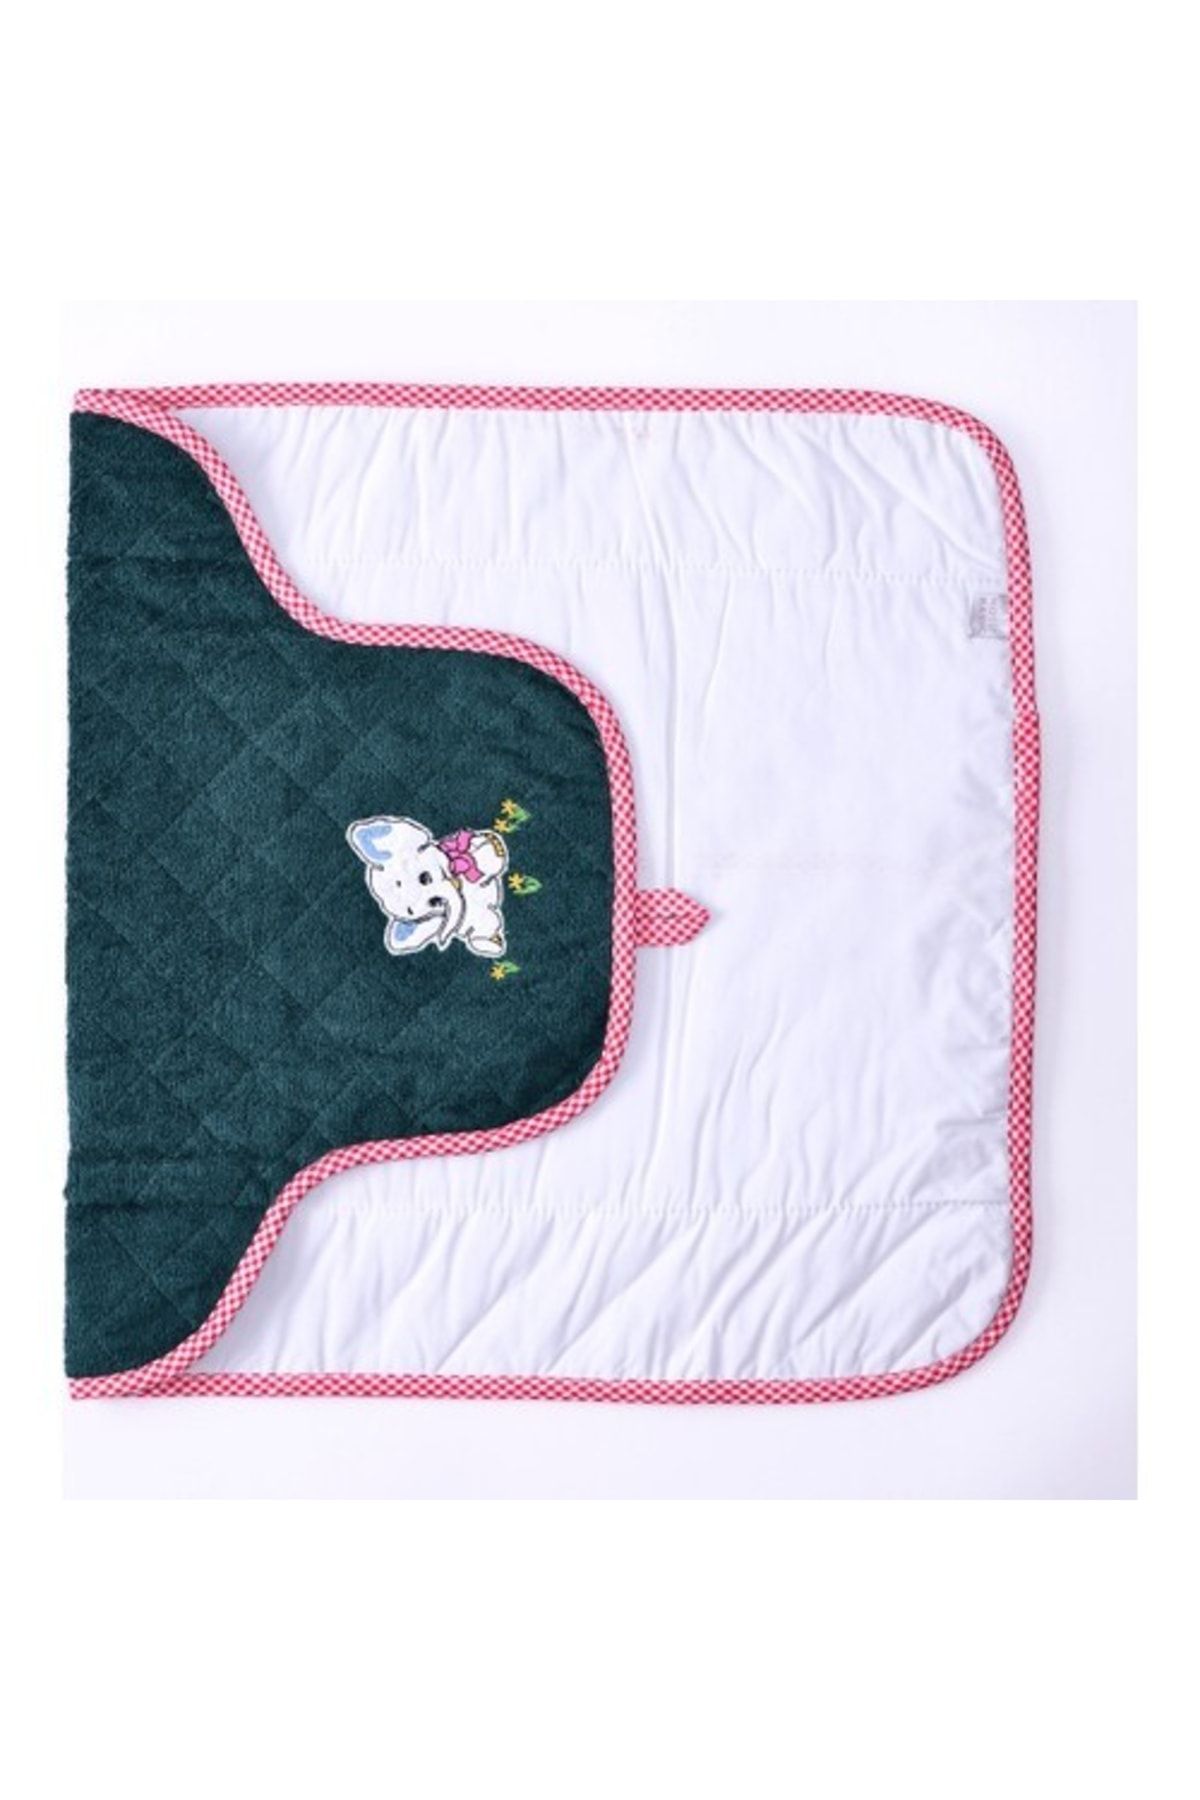 Tekstil Sepeti Bebek Alt Açma Minderi Bakım Pedi Sıvı Geçirmez Fil Yeşil Kırmızı